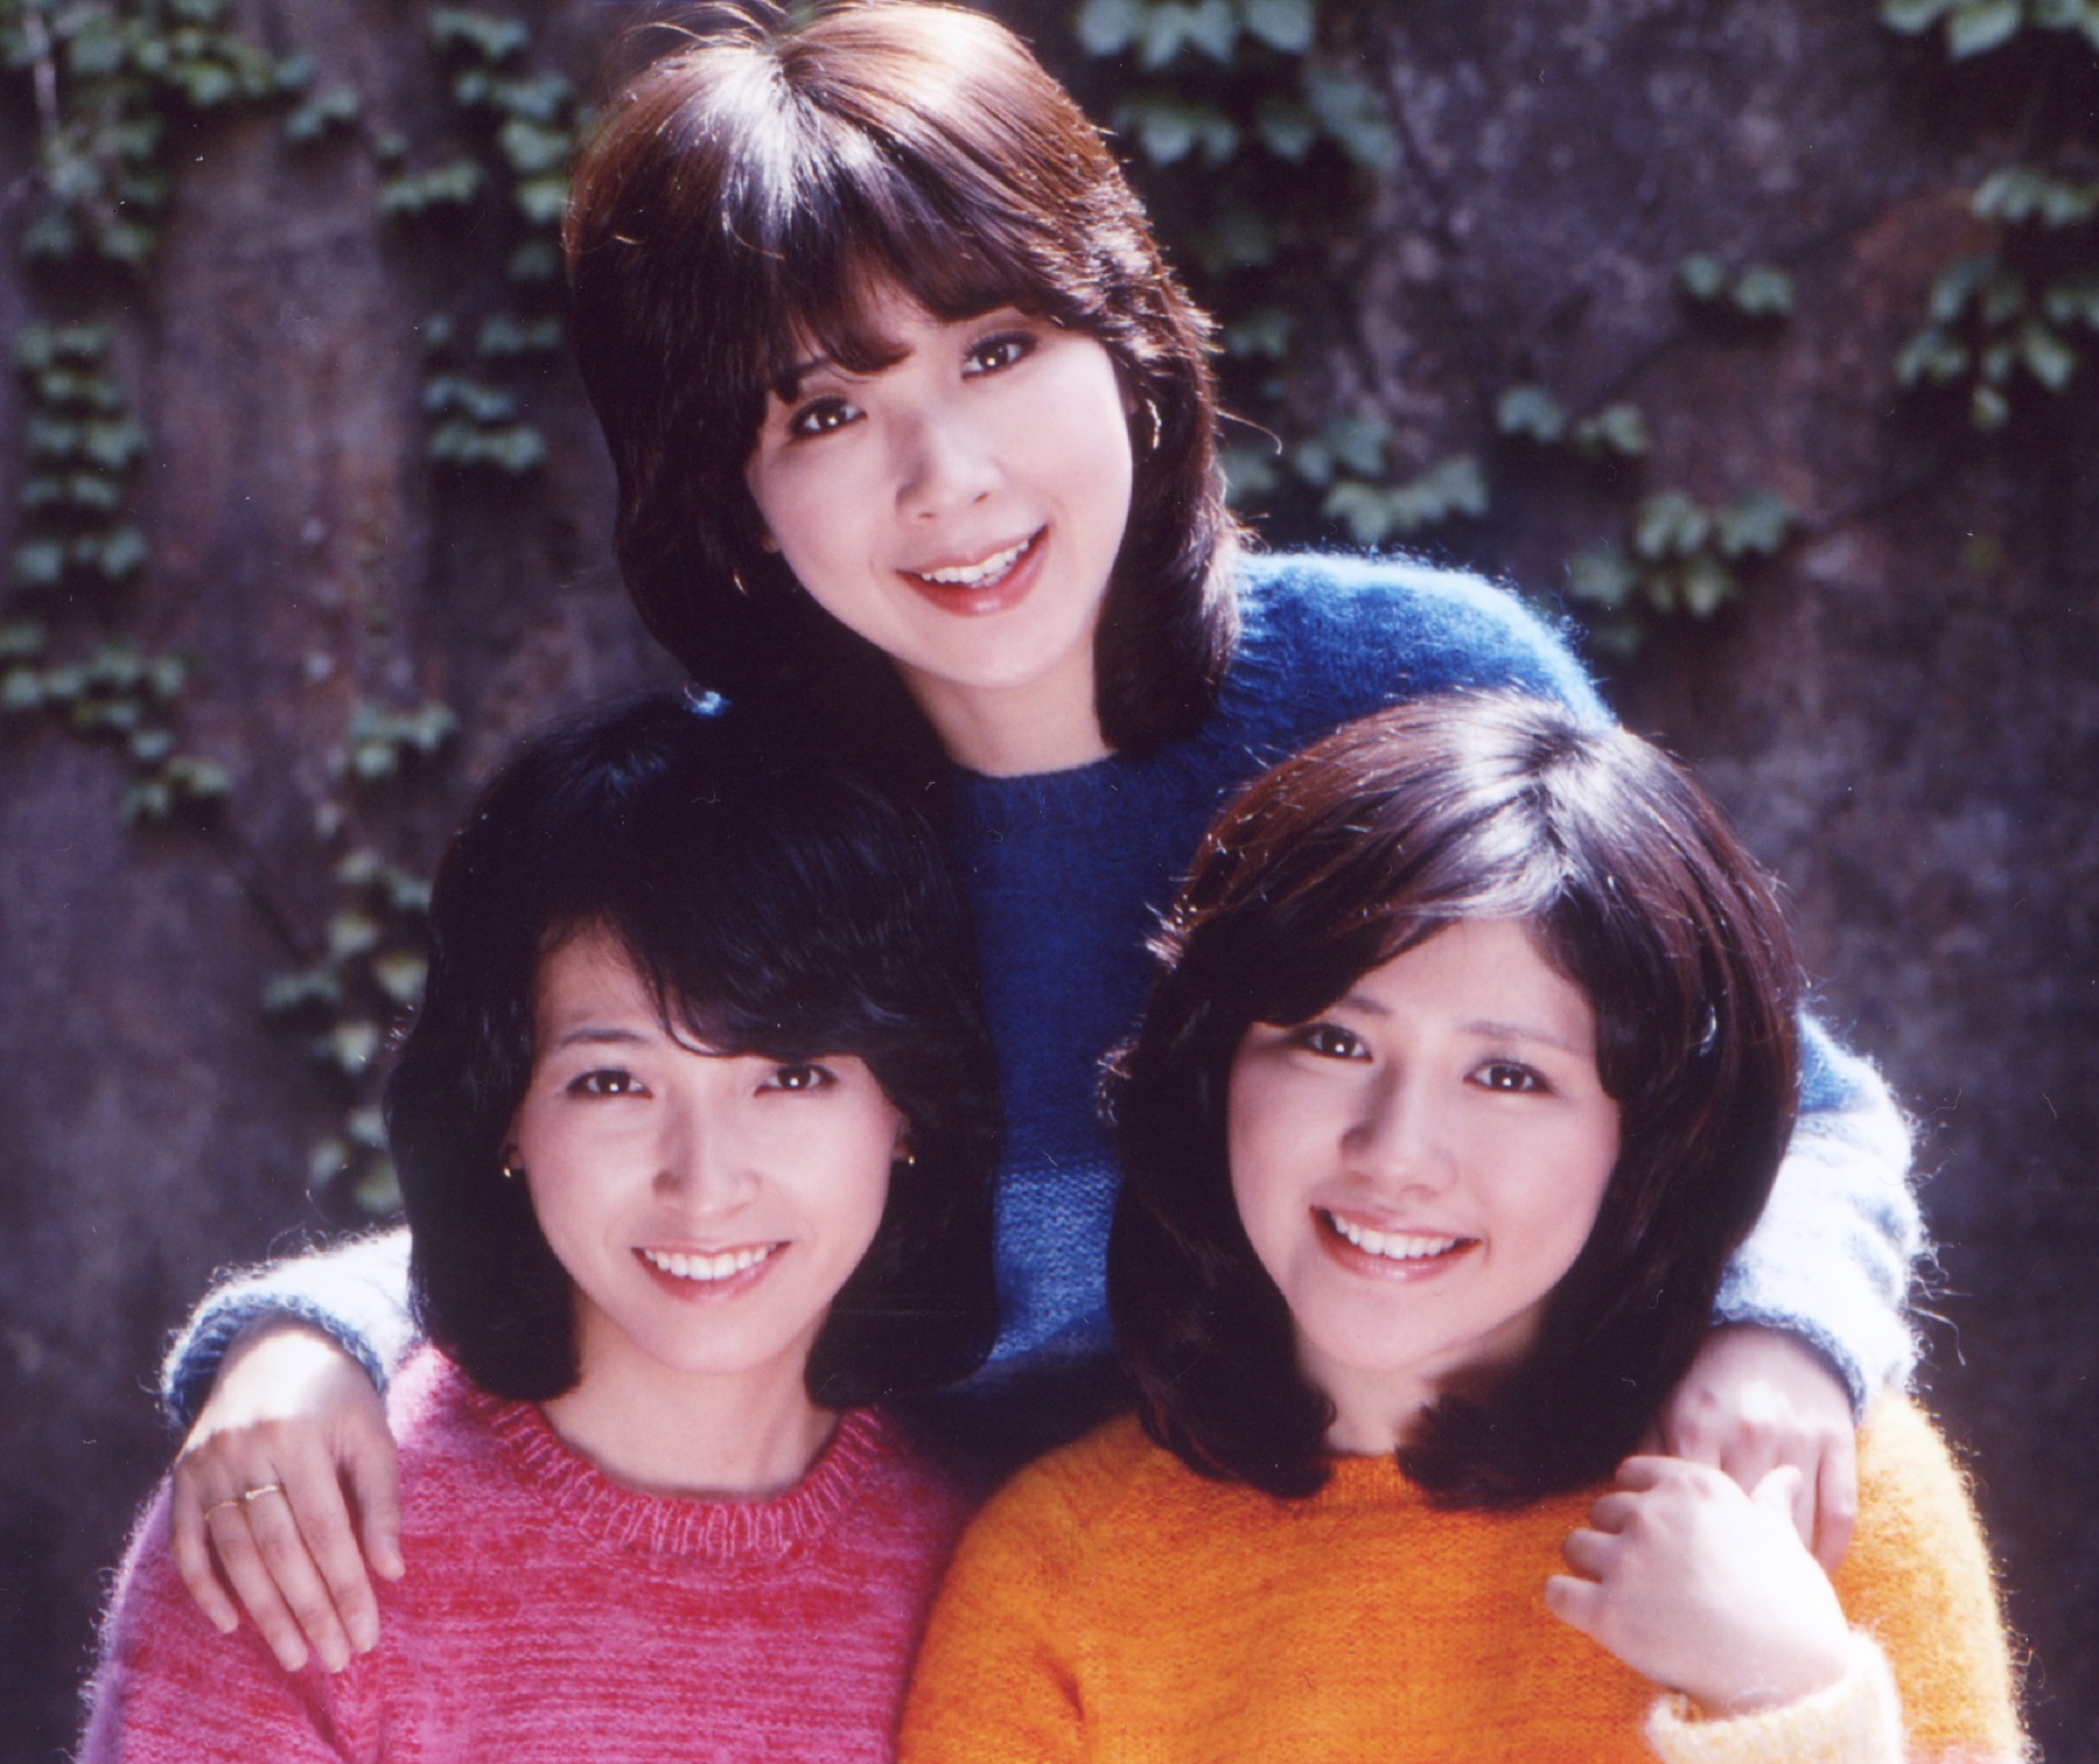 キャンディーズ歌手、伊藤蘭1955年、藤村美樹、1956年、田中好子1956年生まれ